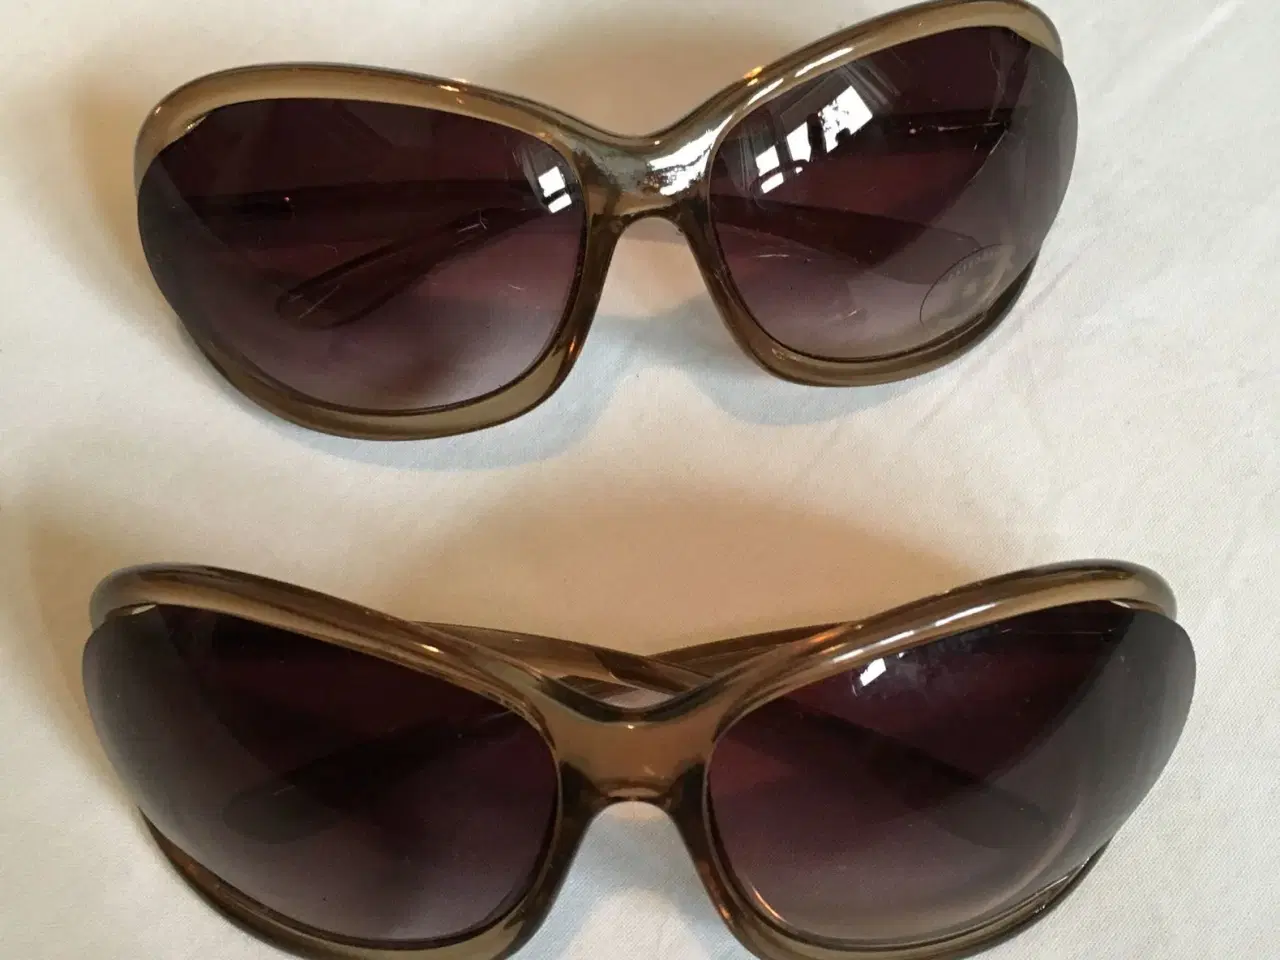 Billede 6 - Diverse solbriller til salg